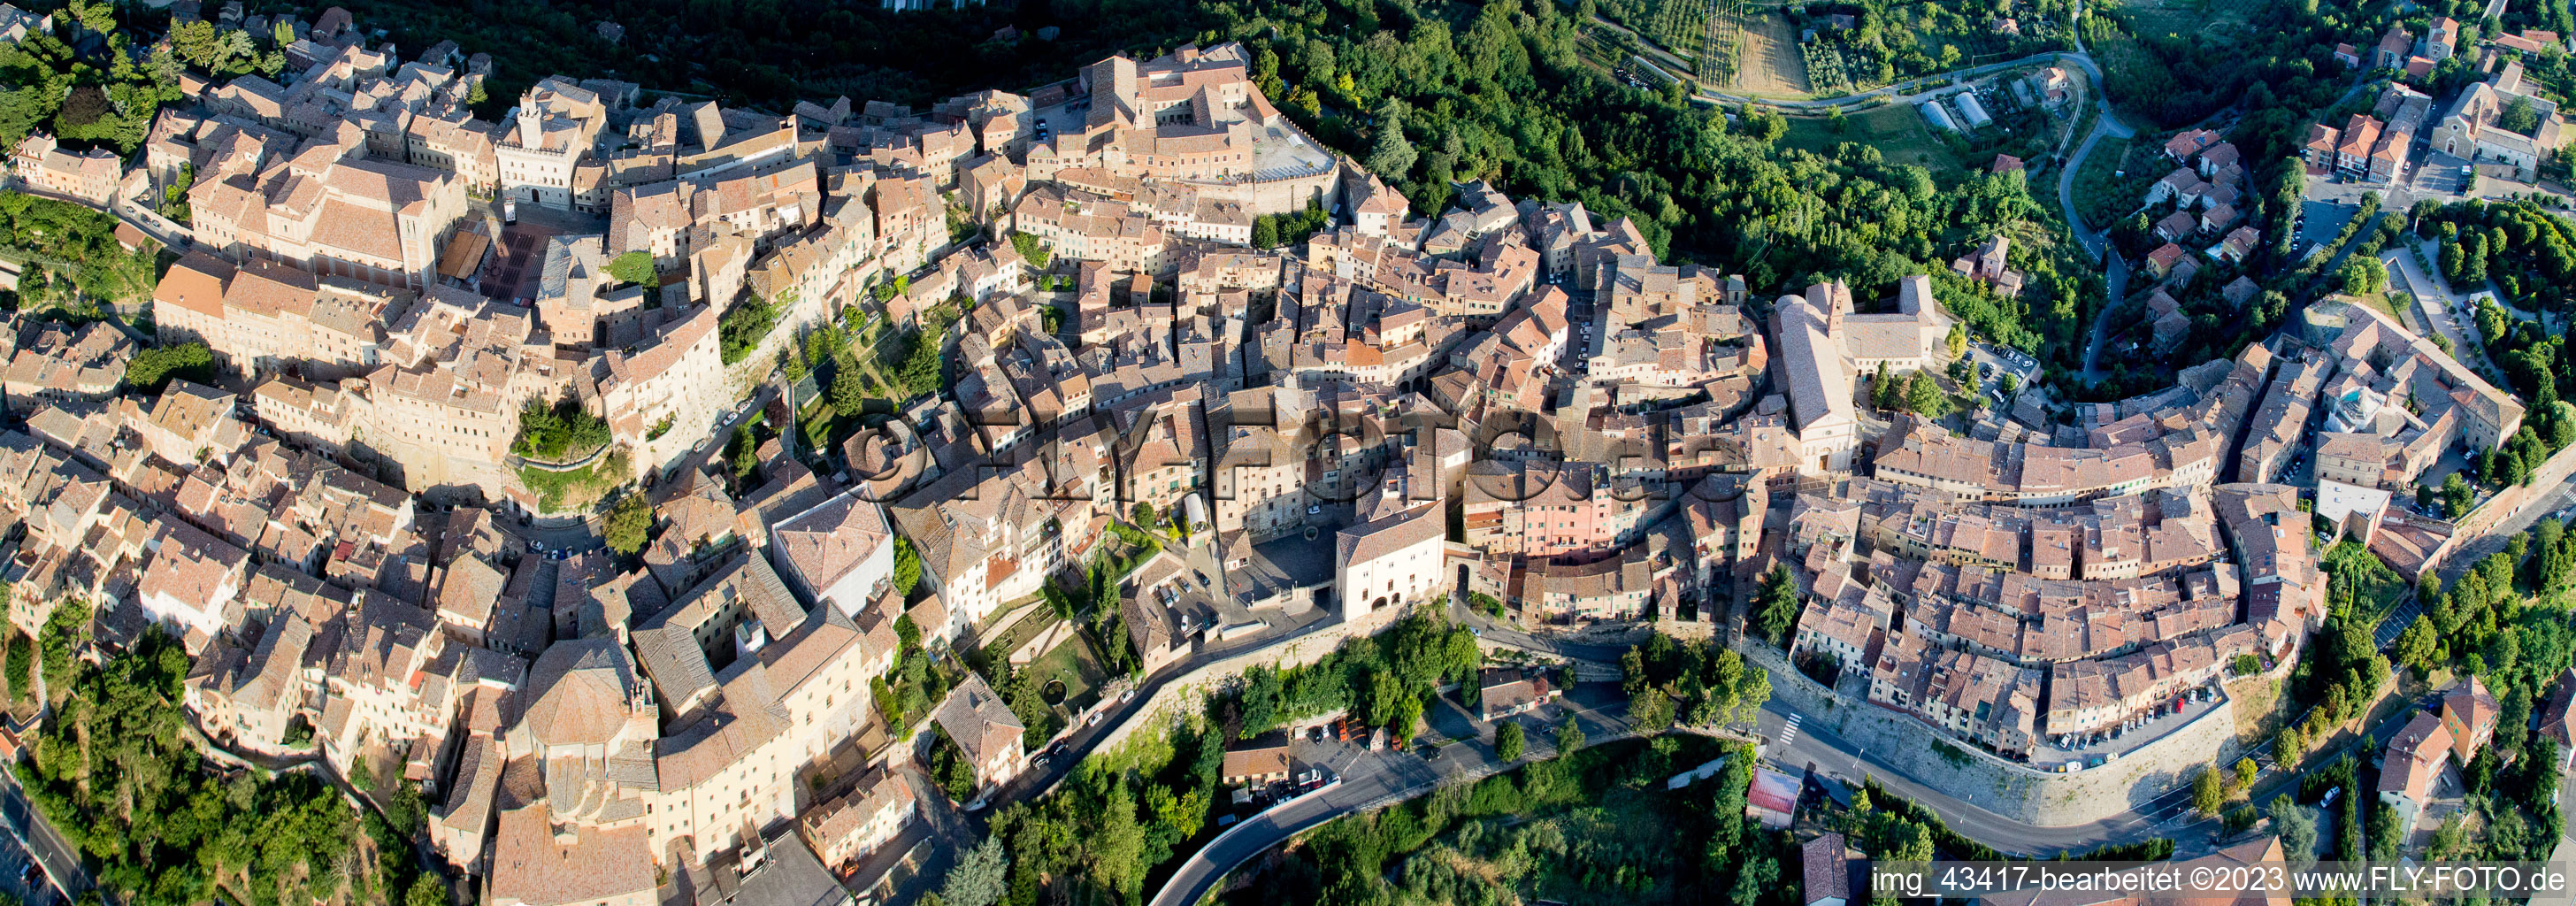 Montepulciano im Bundesland Toscana, Italien aus der Drohnenperspektive